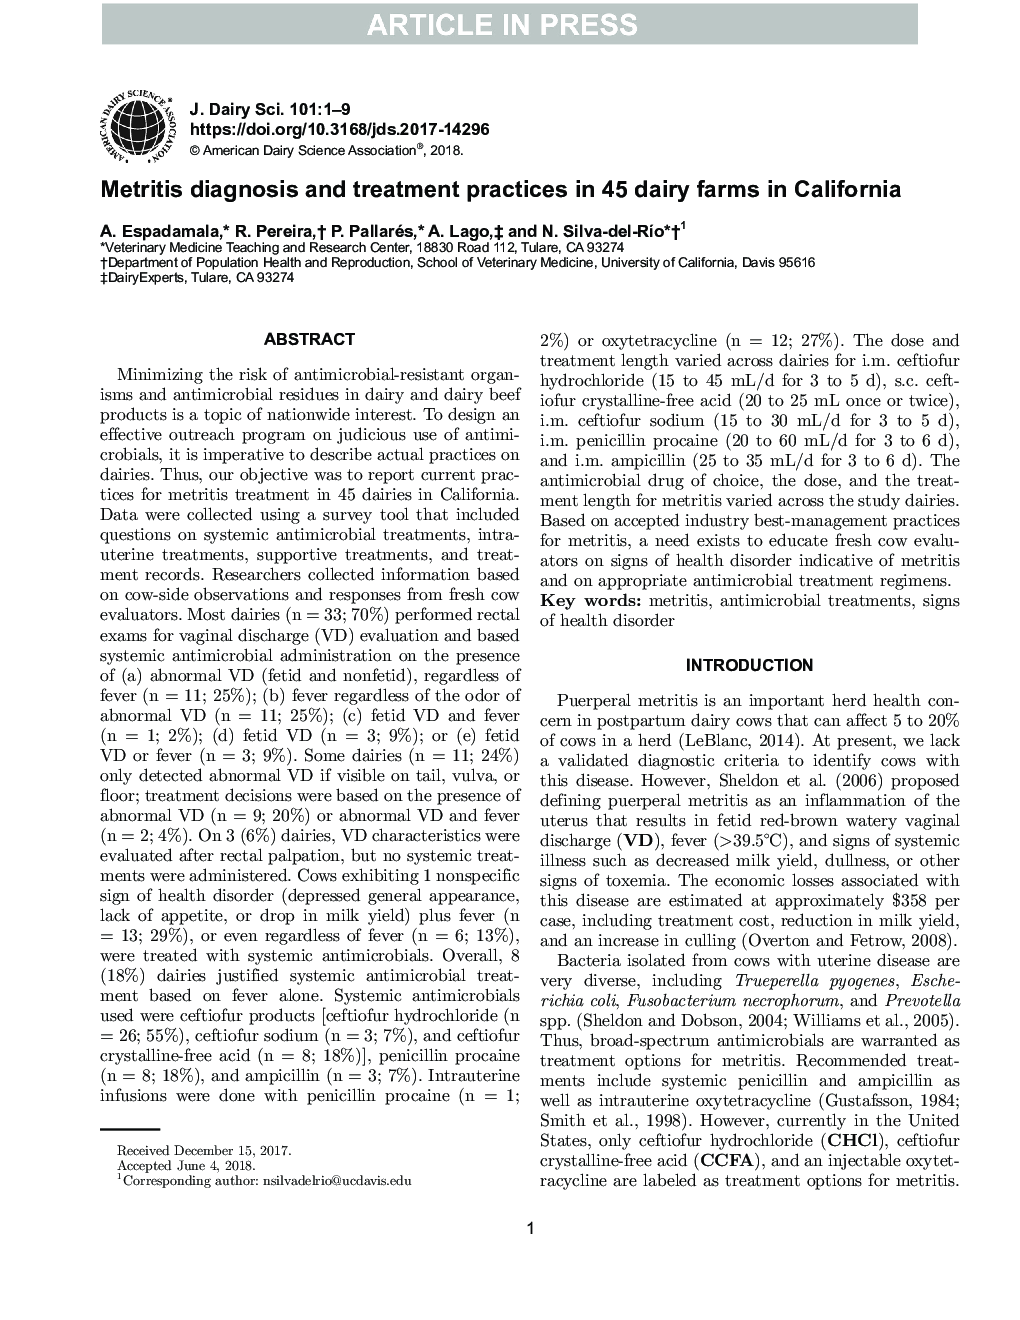 تشخیص و درمان متتری در 45 مزارع شیری در کالیفرنیا